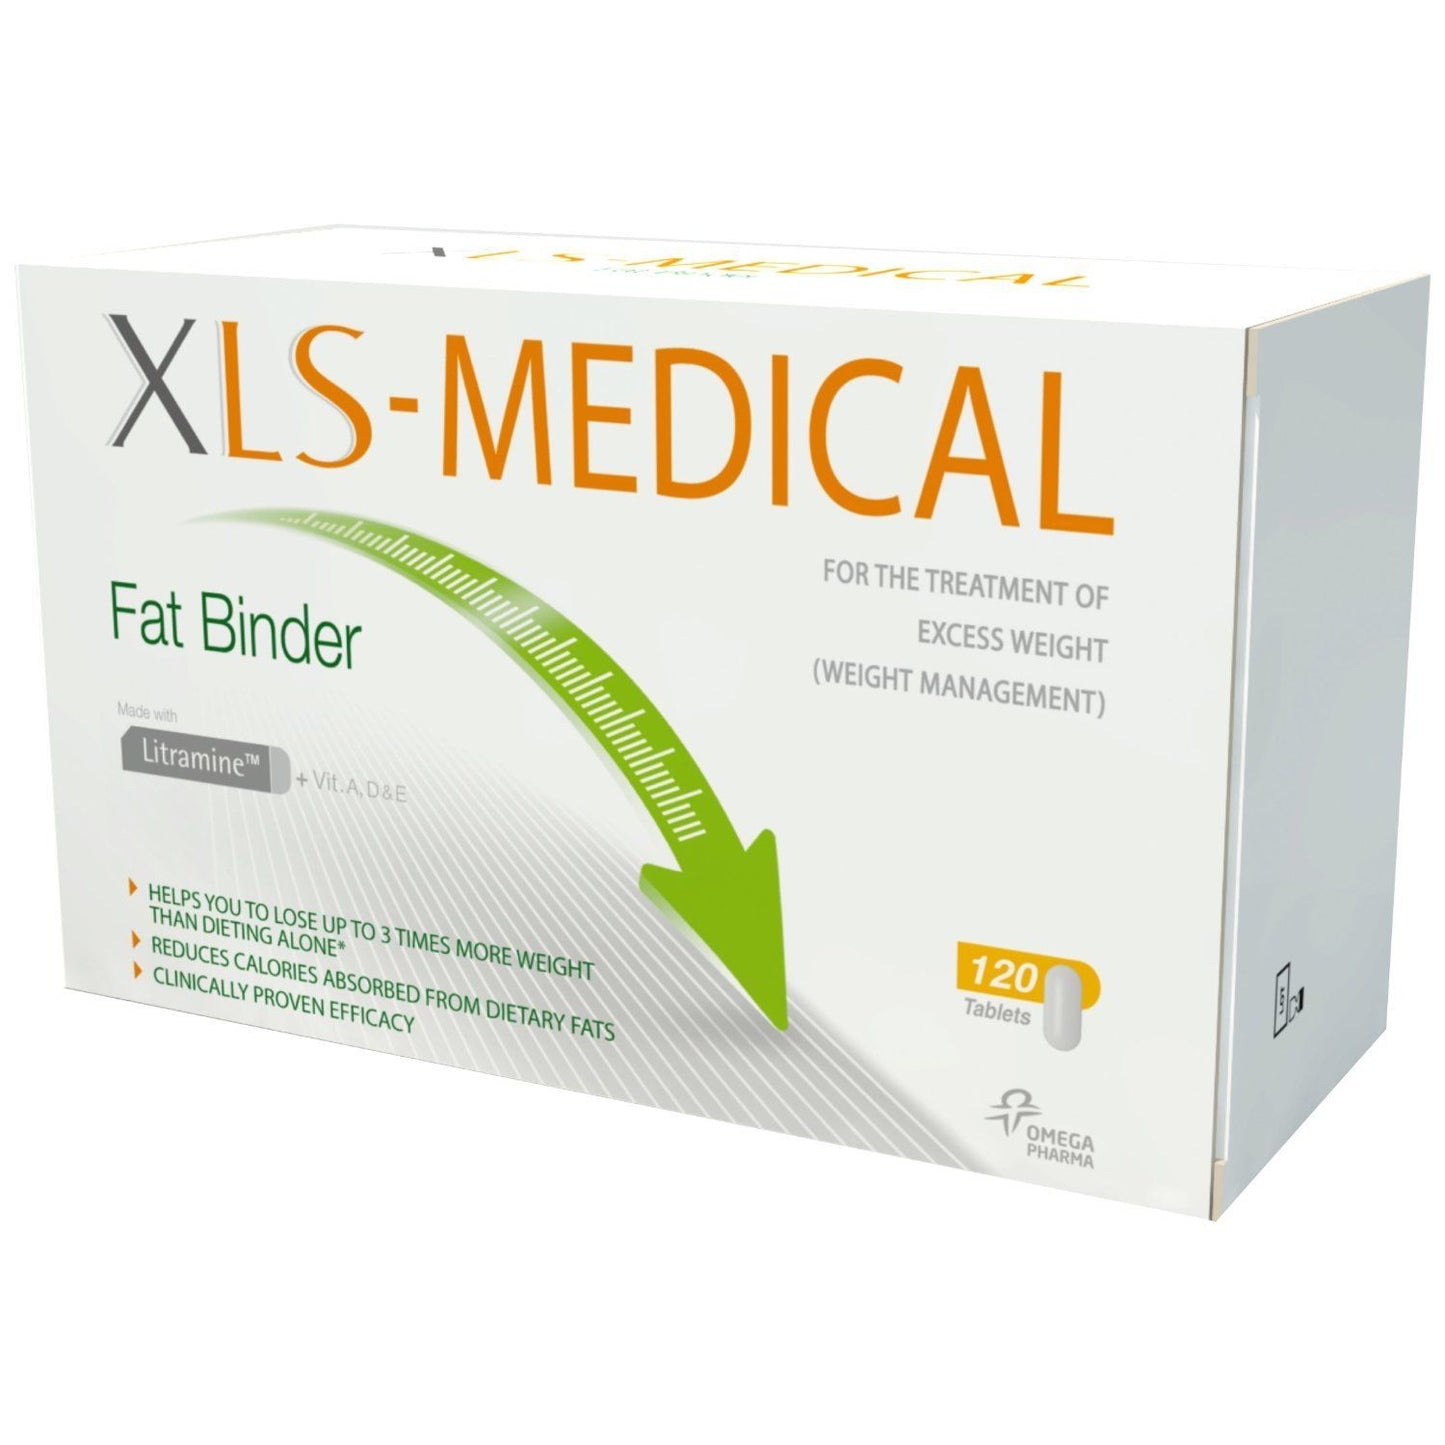 XLS-Medical Fat Binder